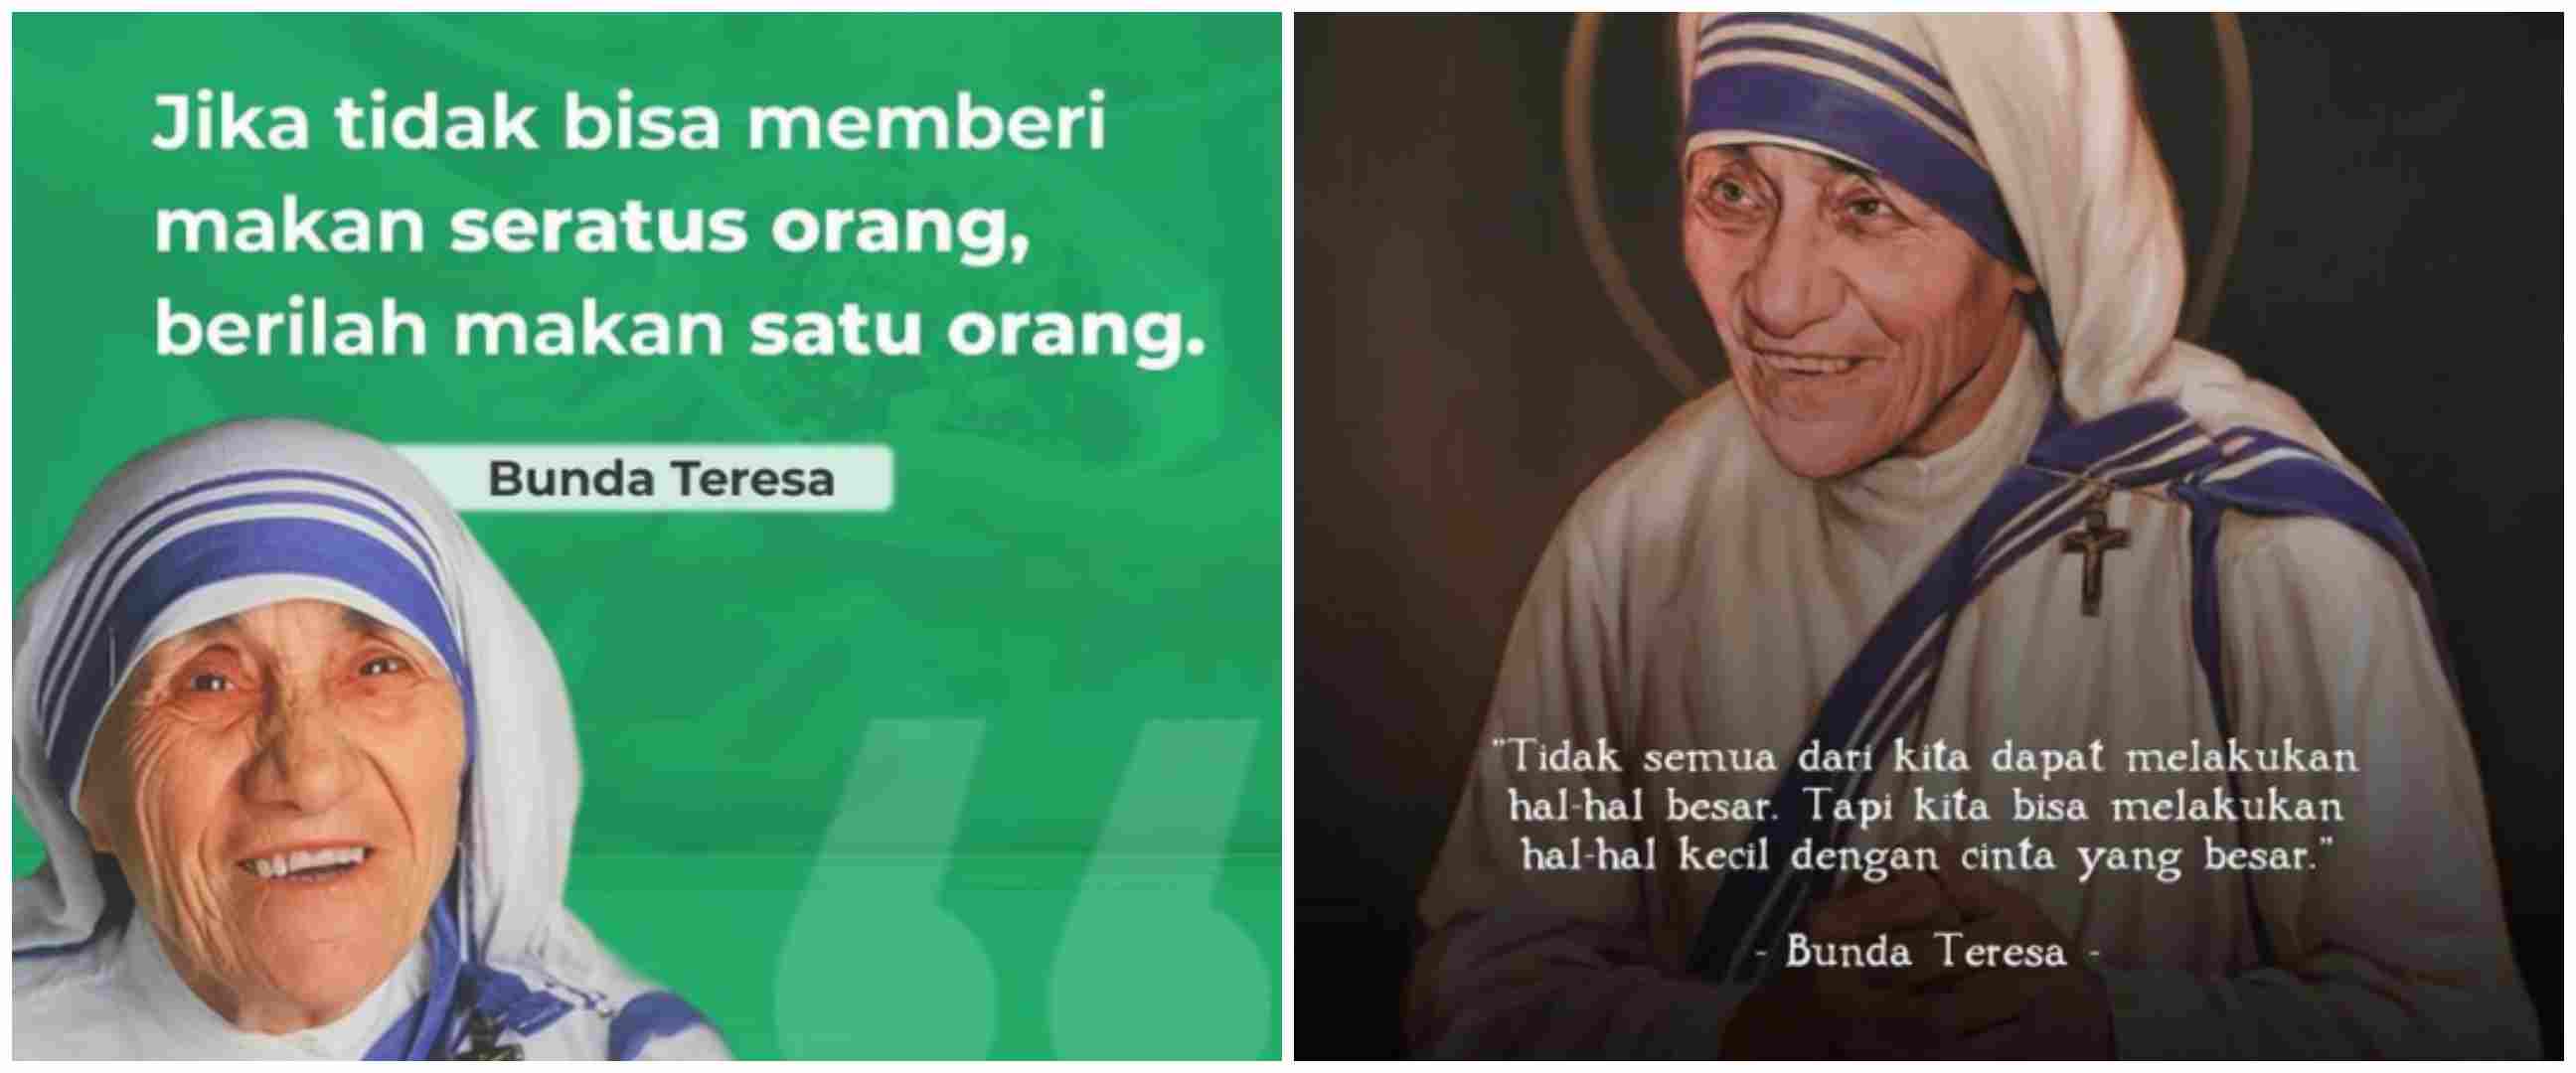 57 Kata-kata motto hidup Bunda Teresa, menginspirasi dan penuh makna